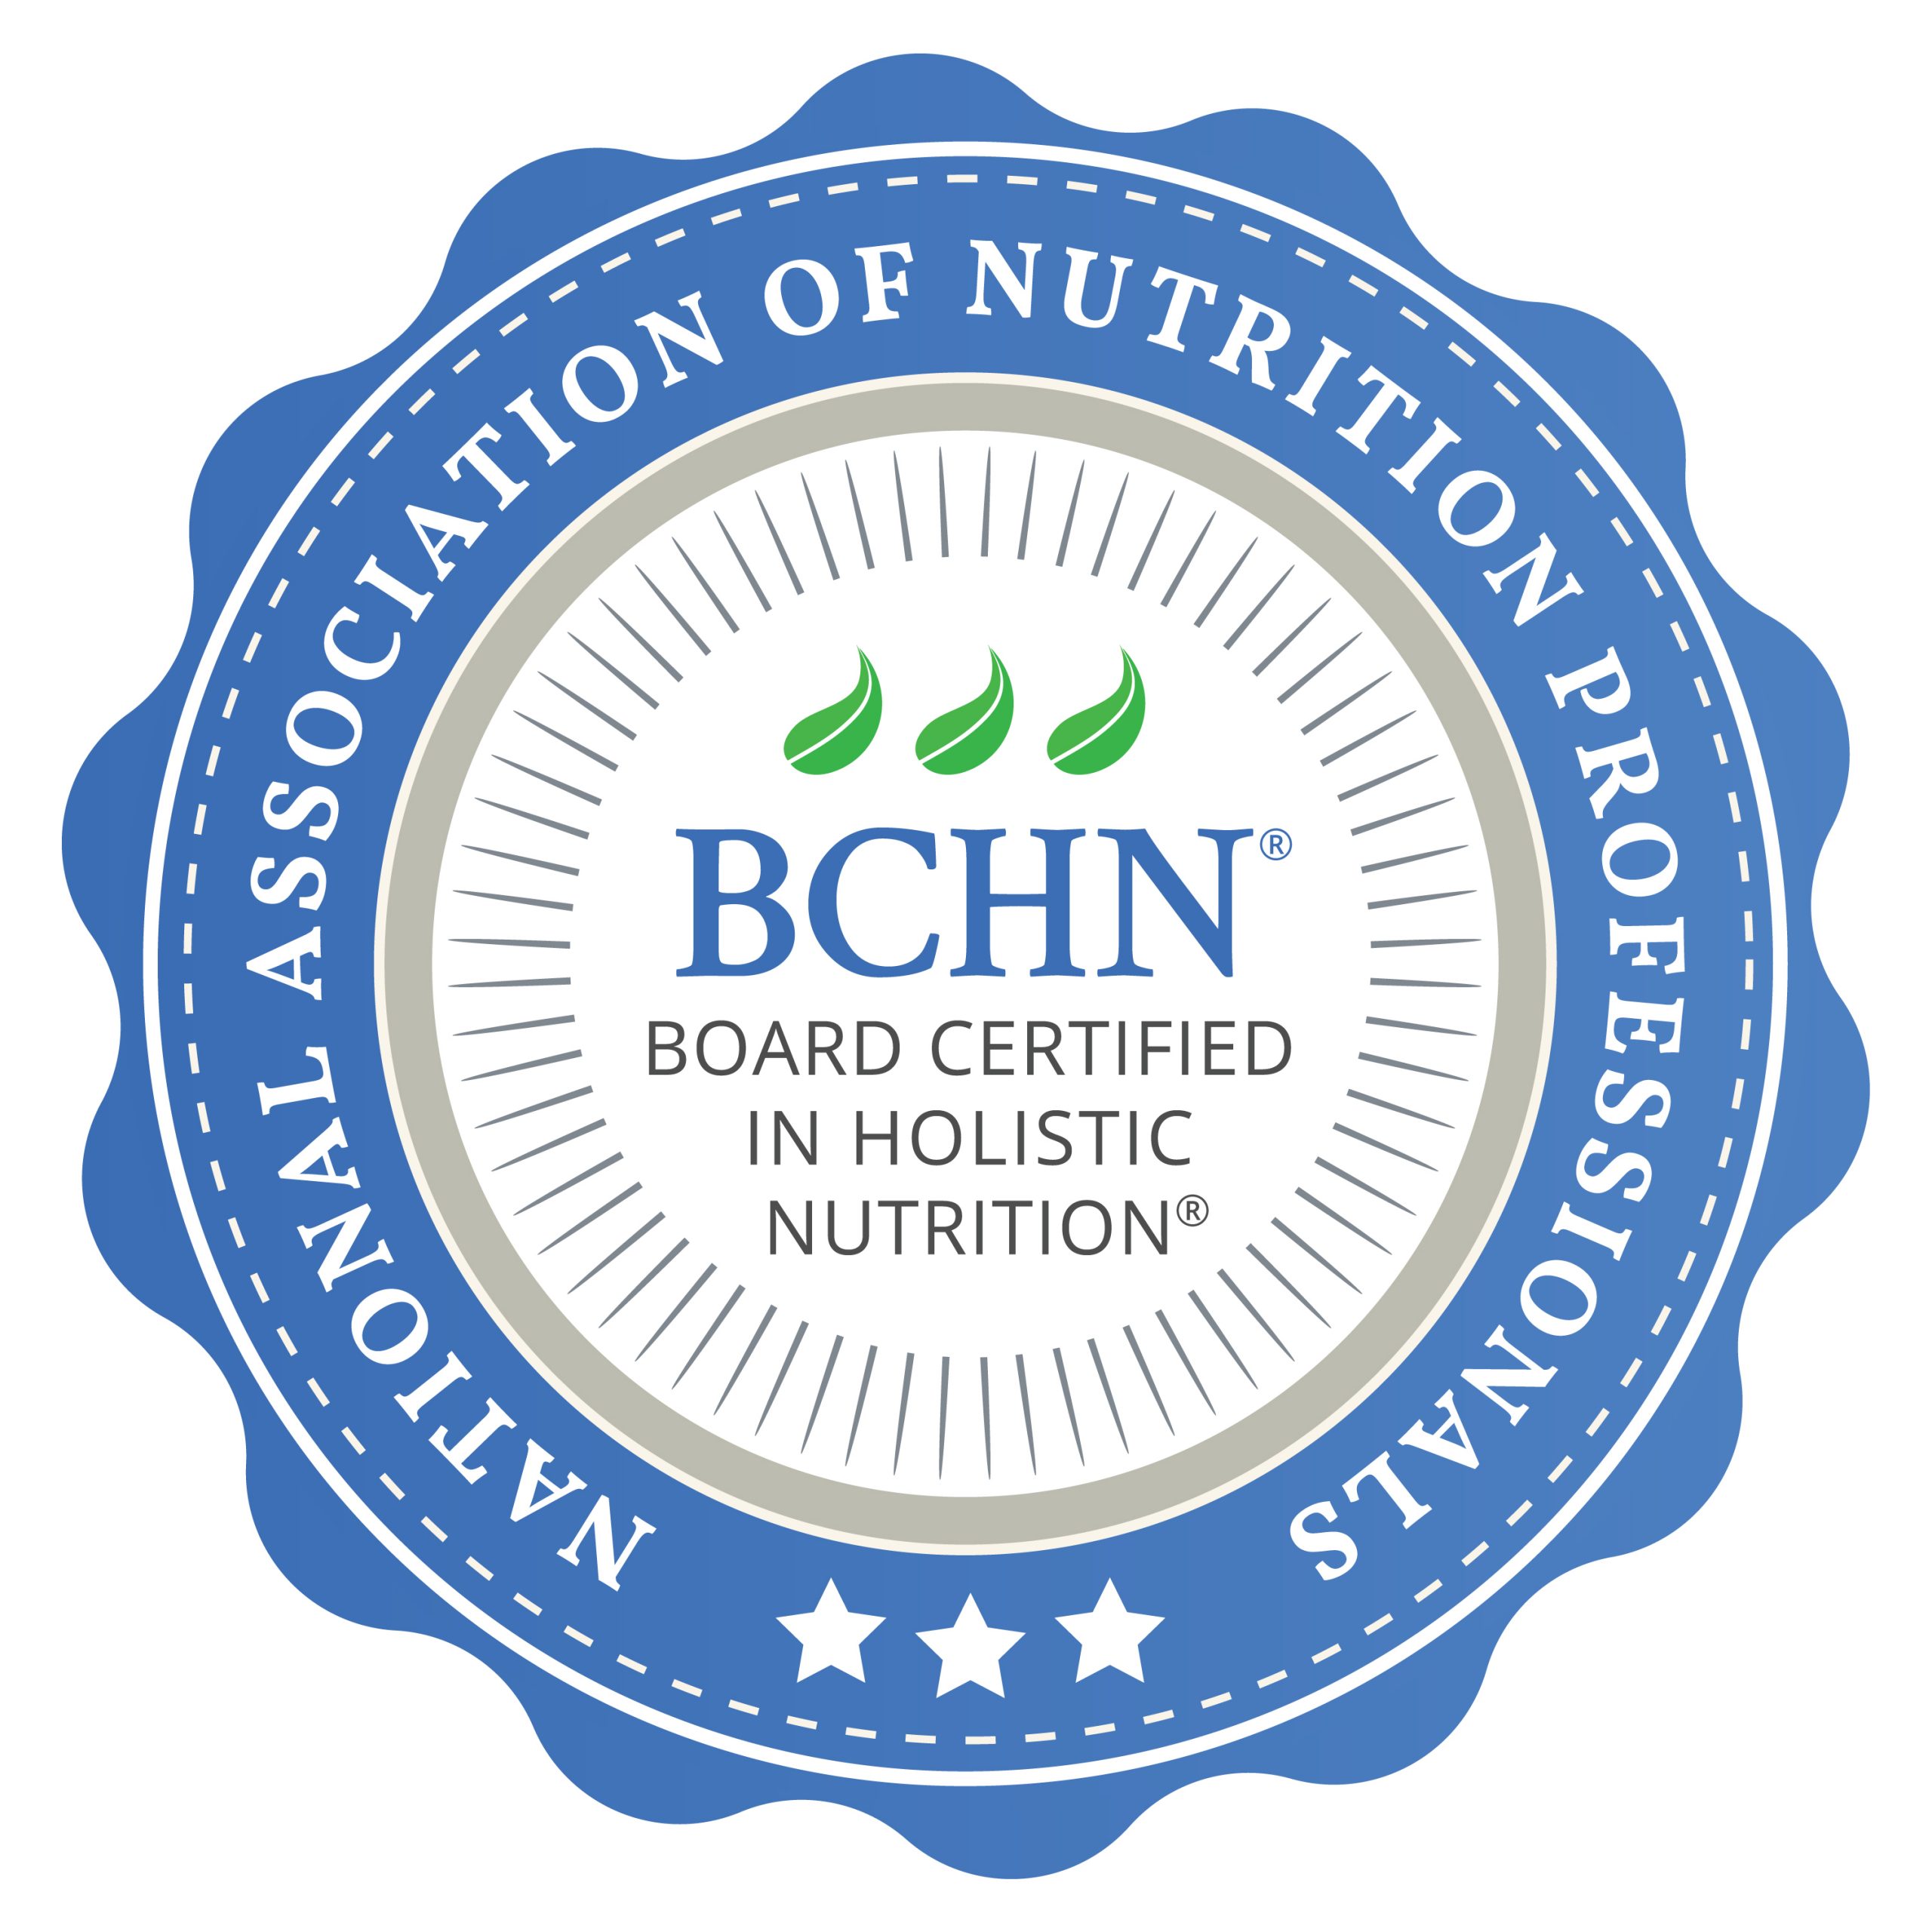 Board Certified in Holistic Nutrition®